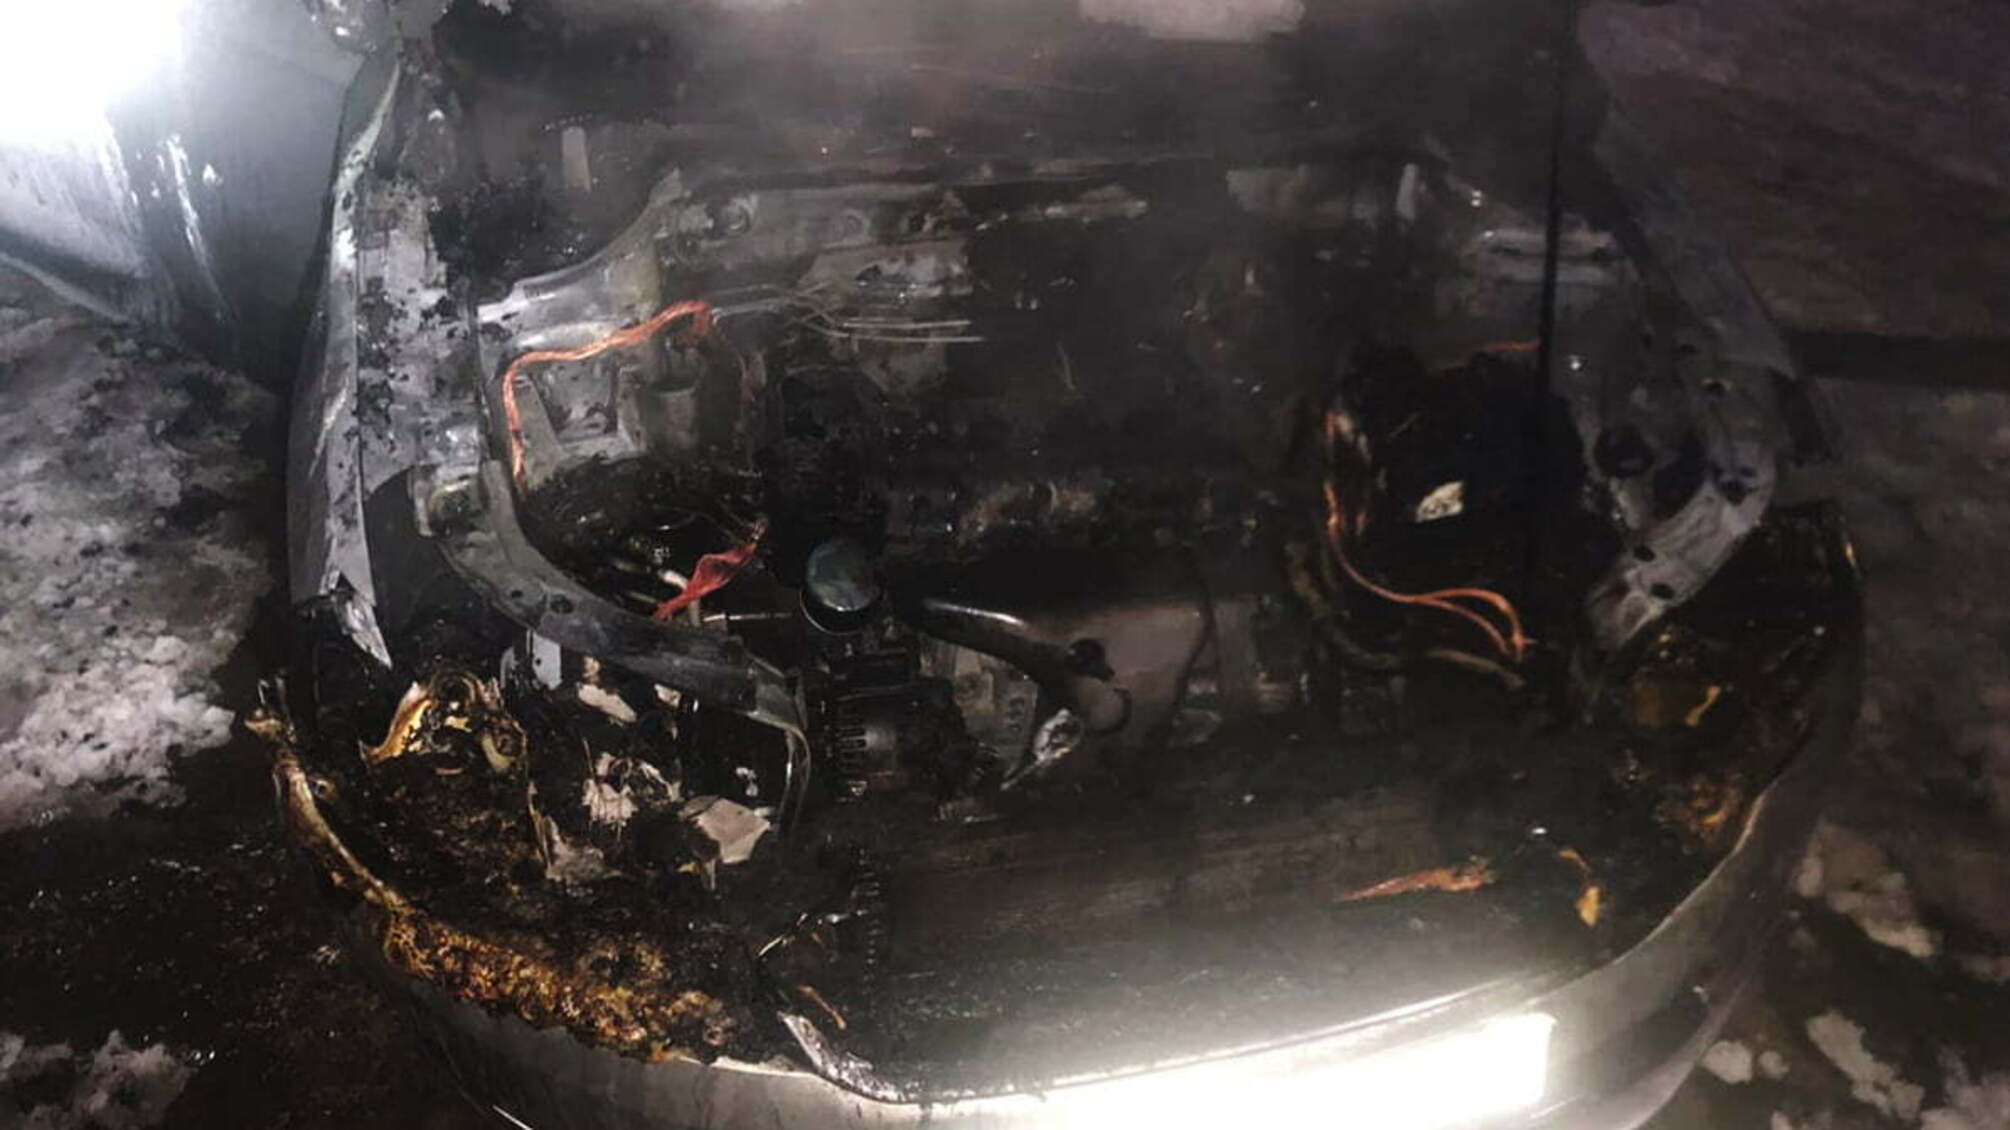 Дніпропетровська область: вогнеборці ліквідували займання в автомобілі